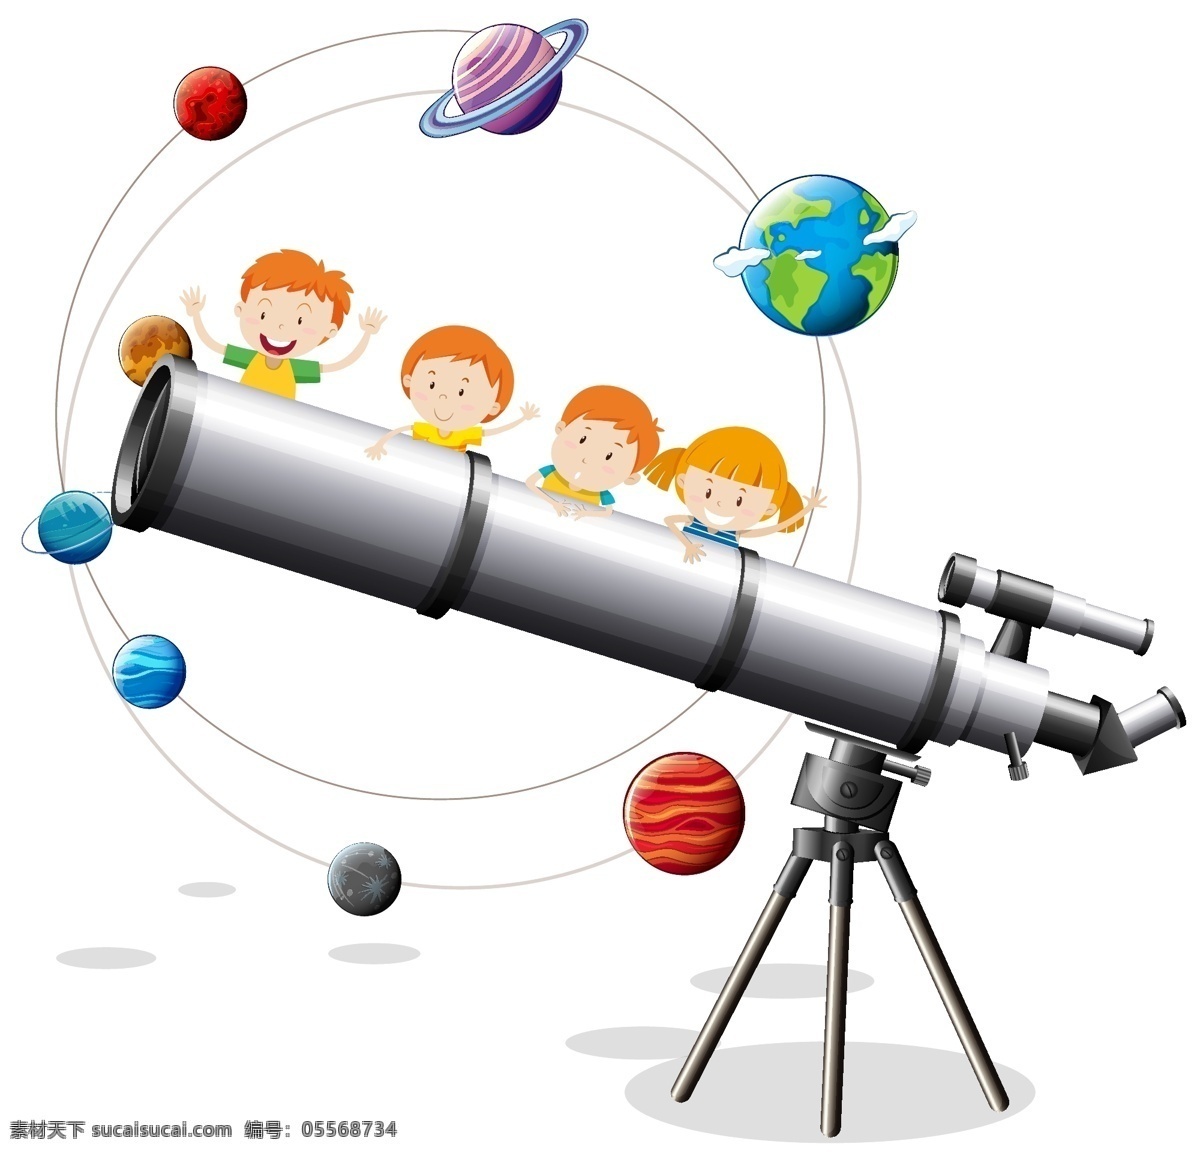 卡通 太空 宇宙 卡通太空宇宙 火箭 科学 行星 天文学 图标 地球 土星 占星术 火星 符号 太阳系 技术 木星 金星 卡通设计